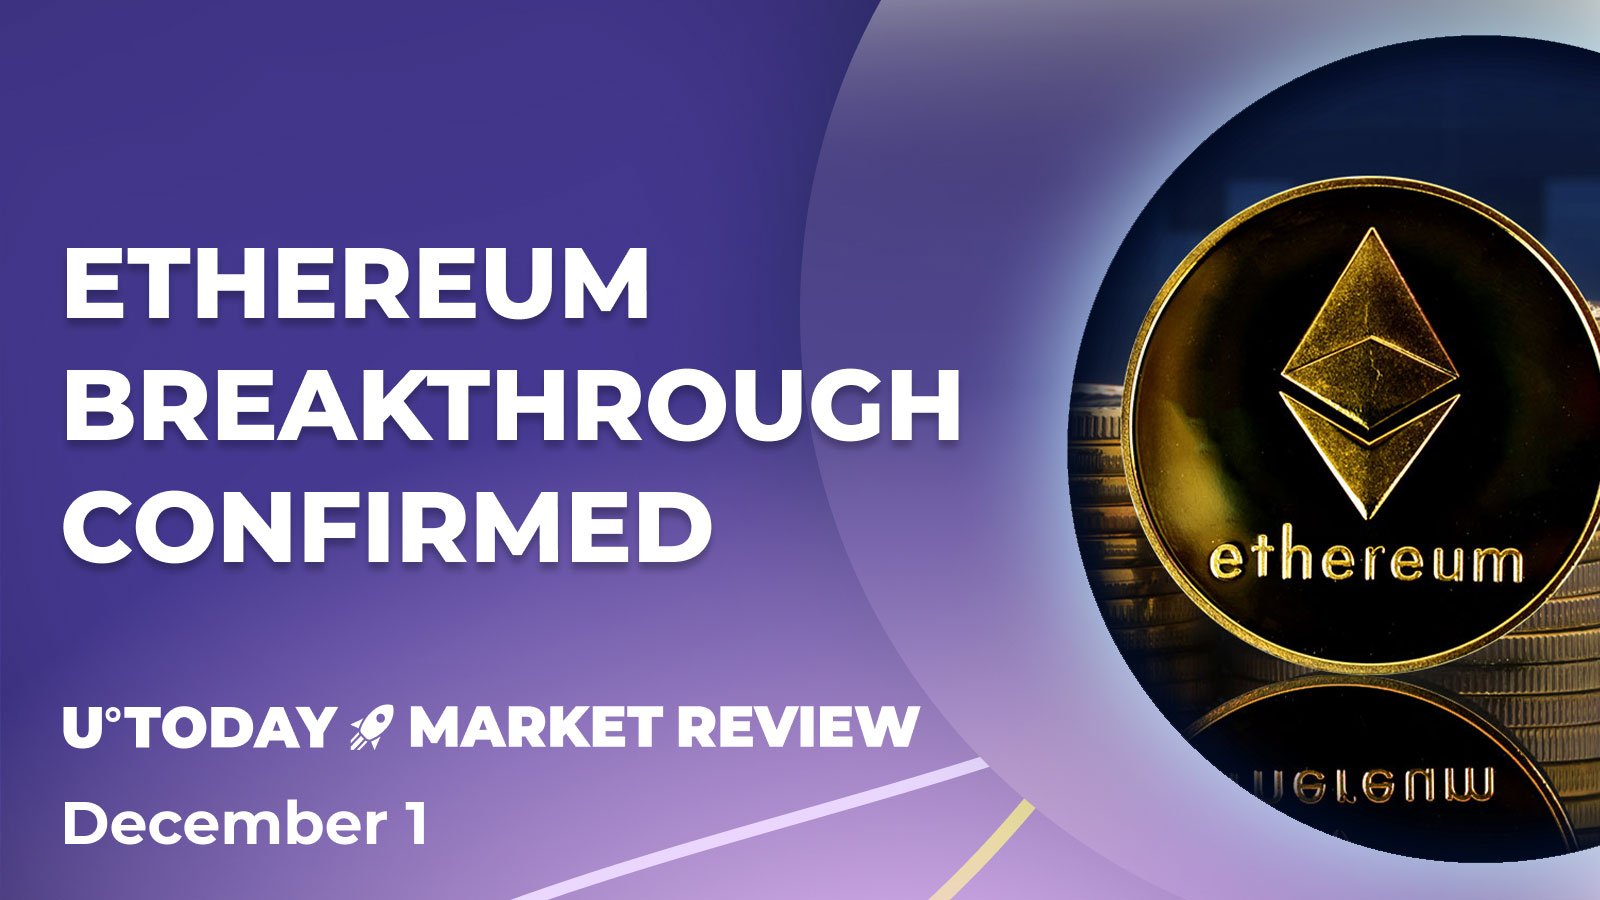 El precio de Ethereum (ETH) apunta al próximo avance: nuevo máximo en el horizonte